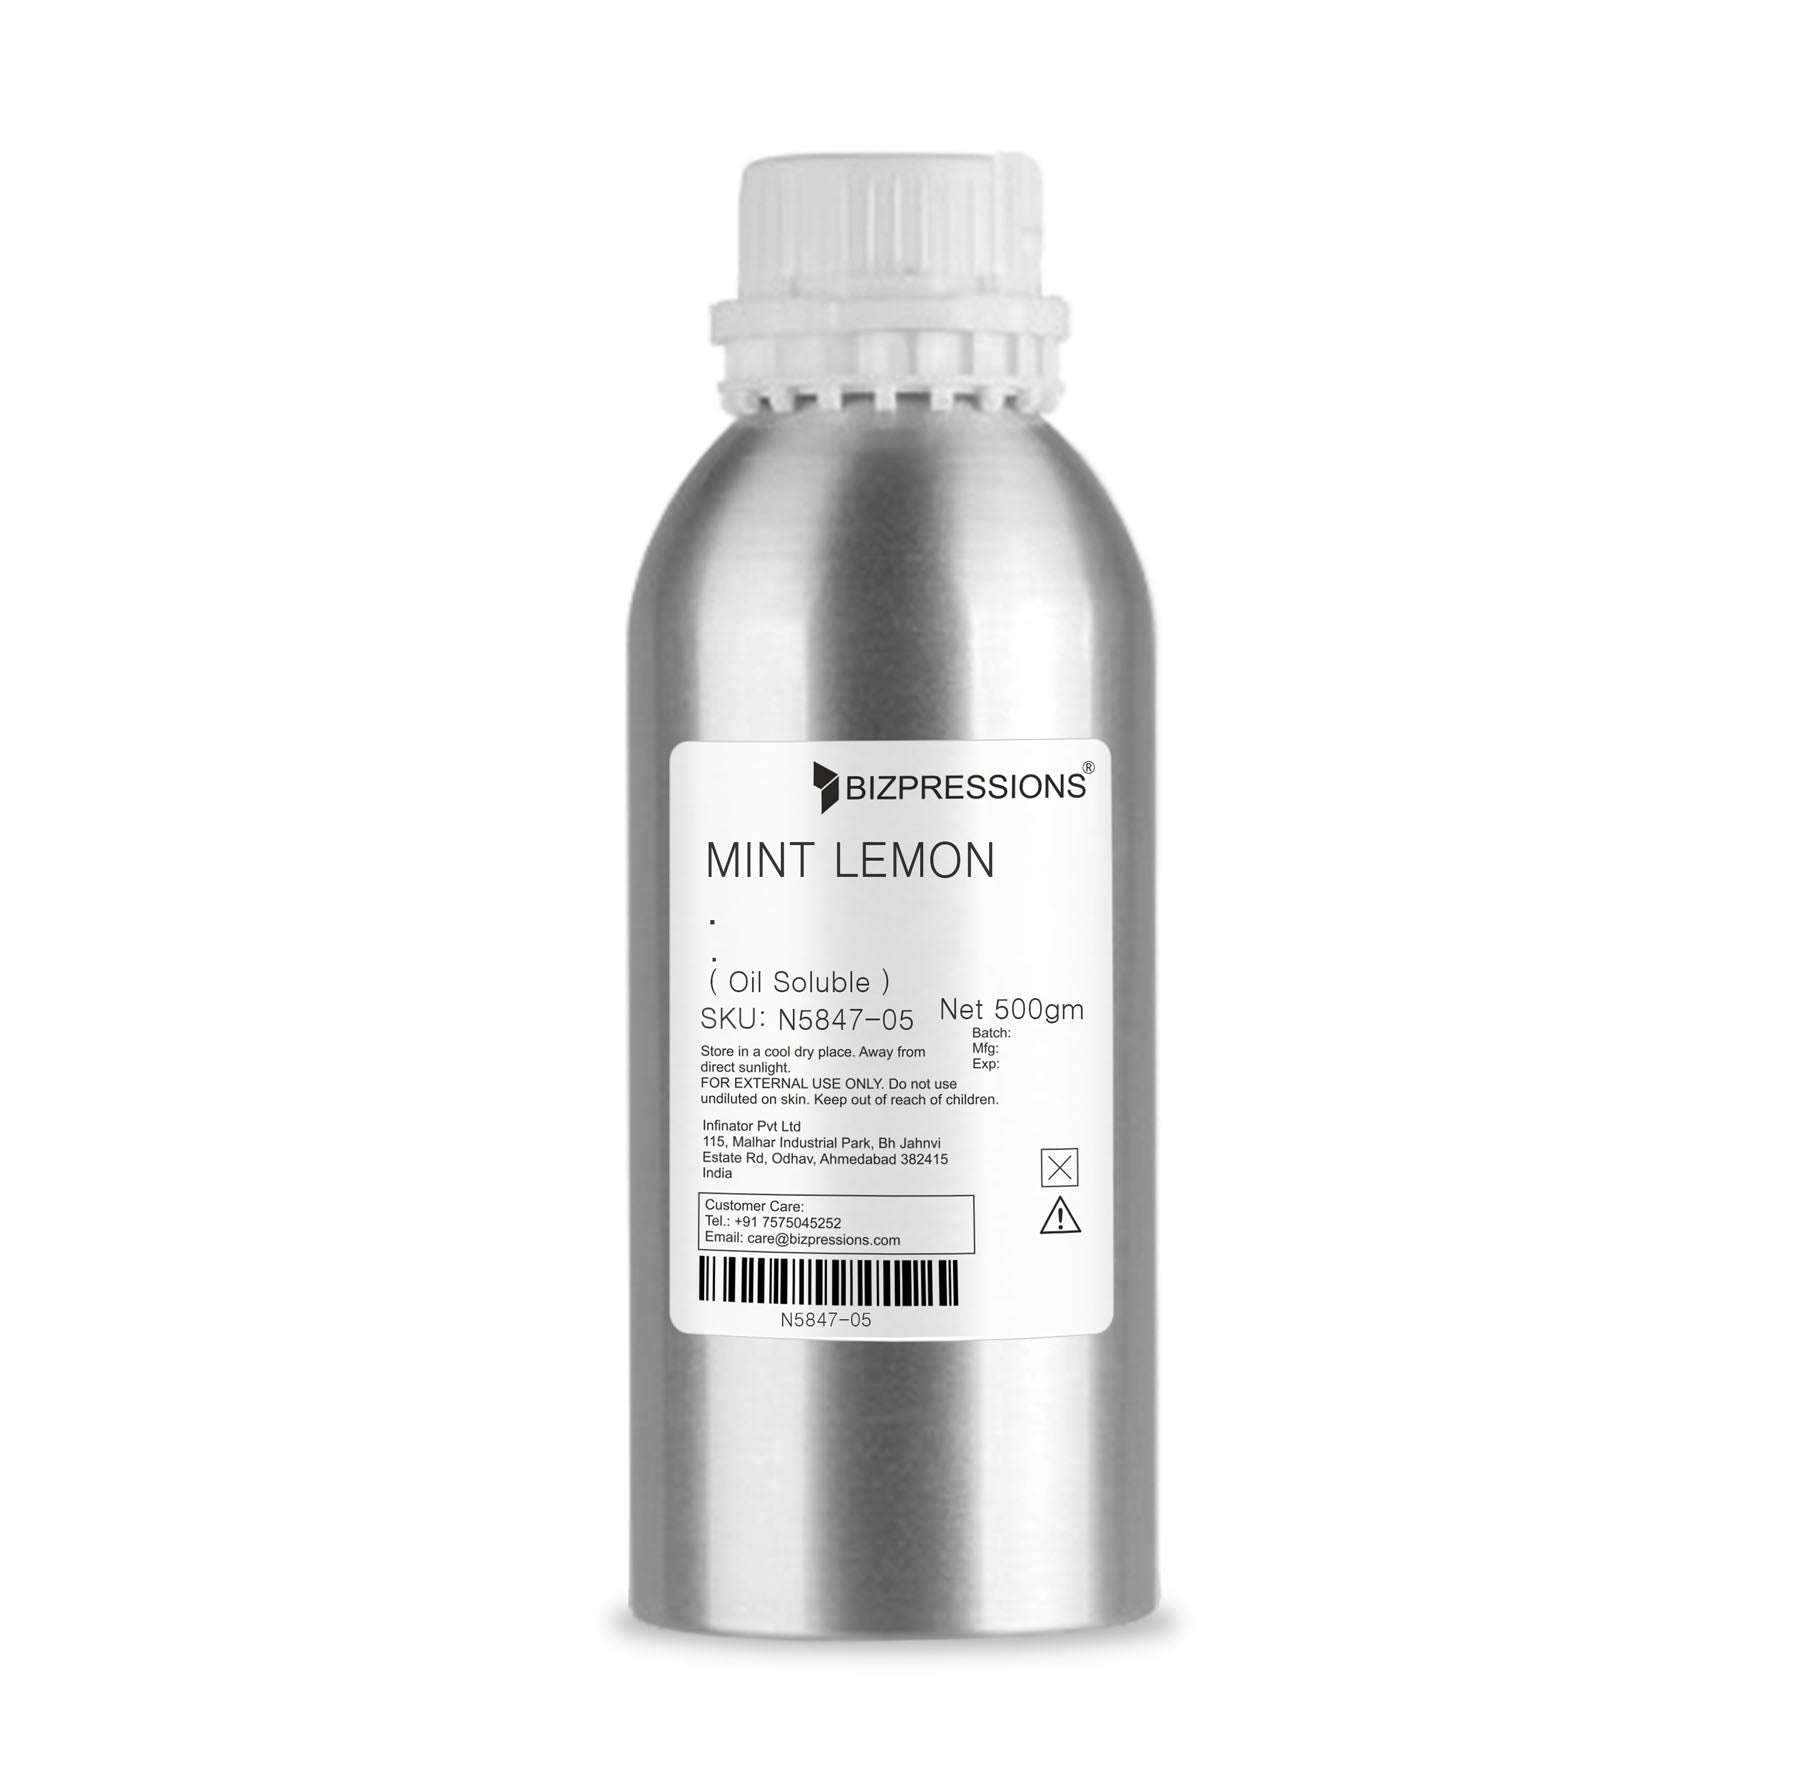 MINT LEMON - Fragrance ( Oil Soluble ) - 500 gm